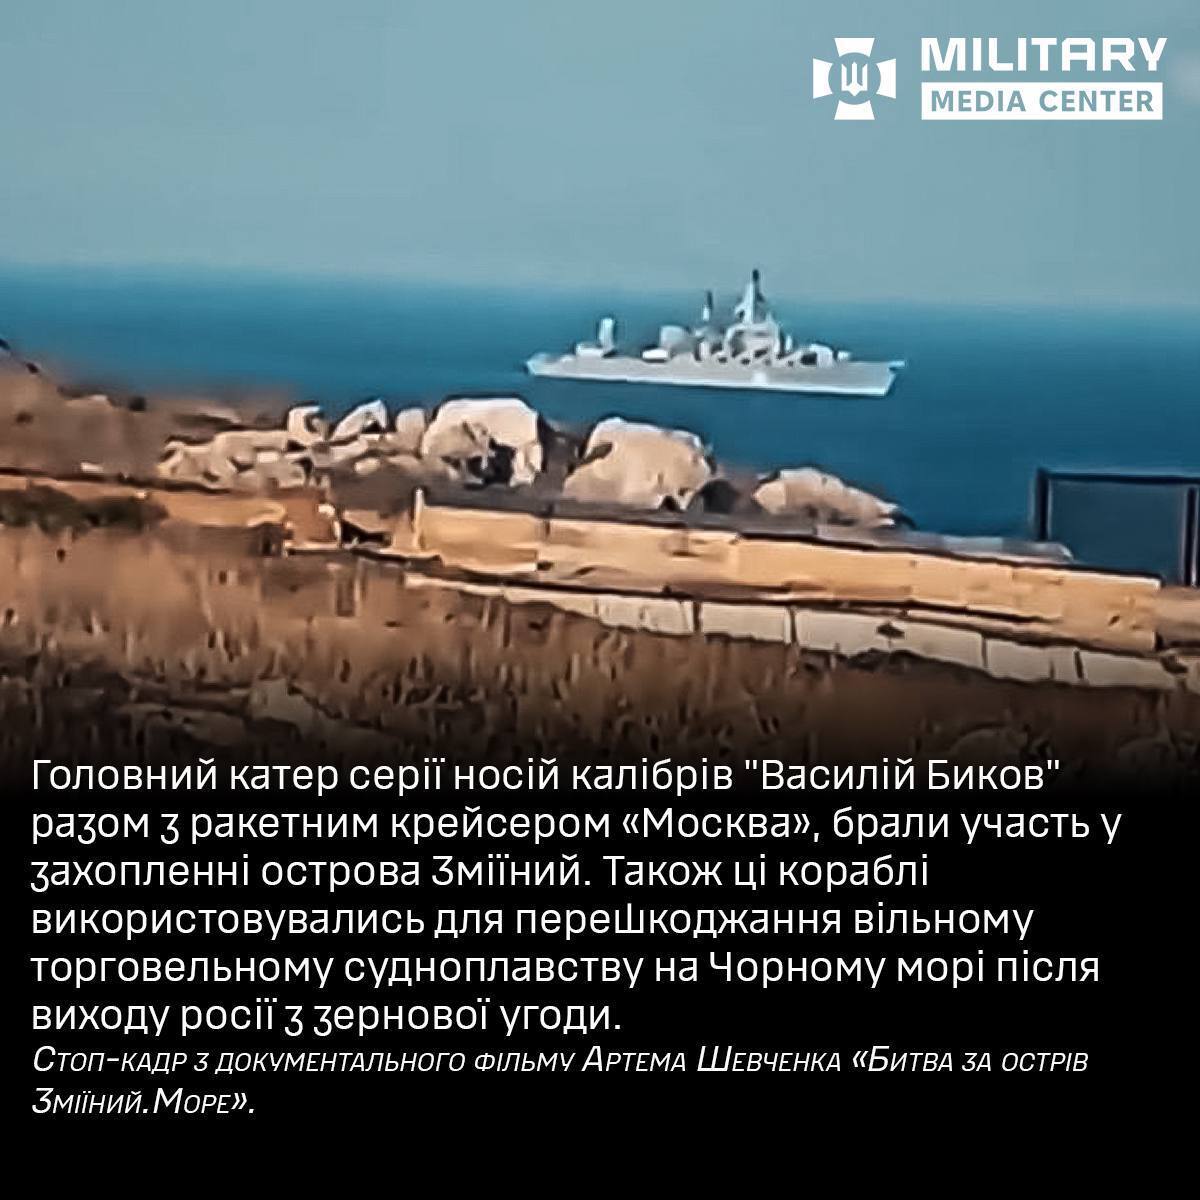 Statek ten brał udział w działaniach wojennych na Ukrainie